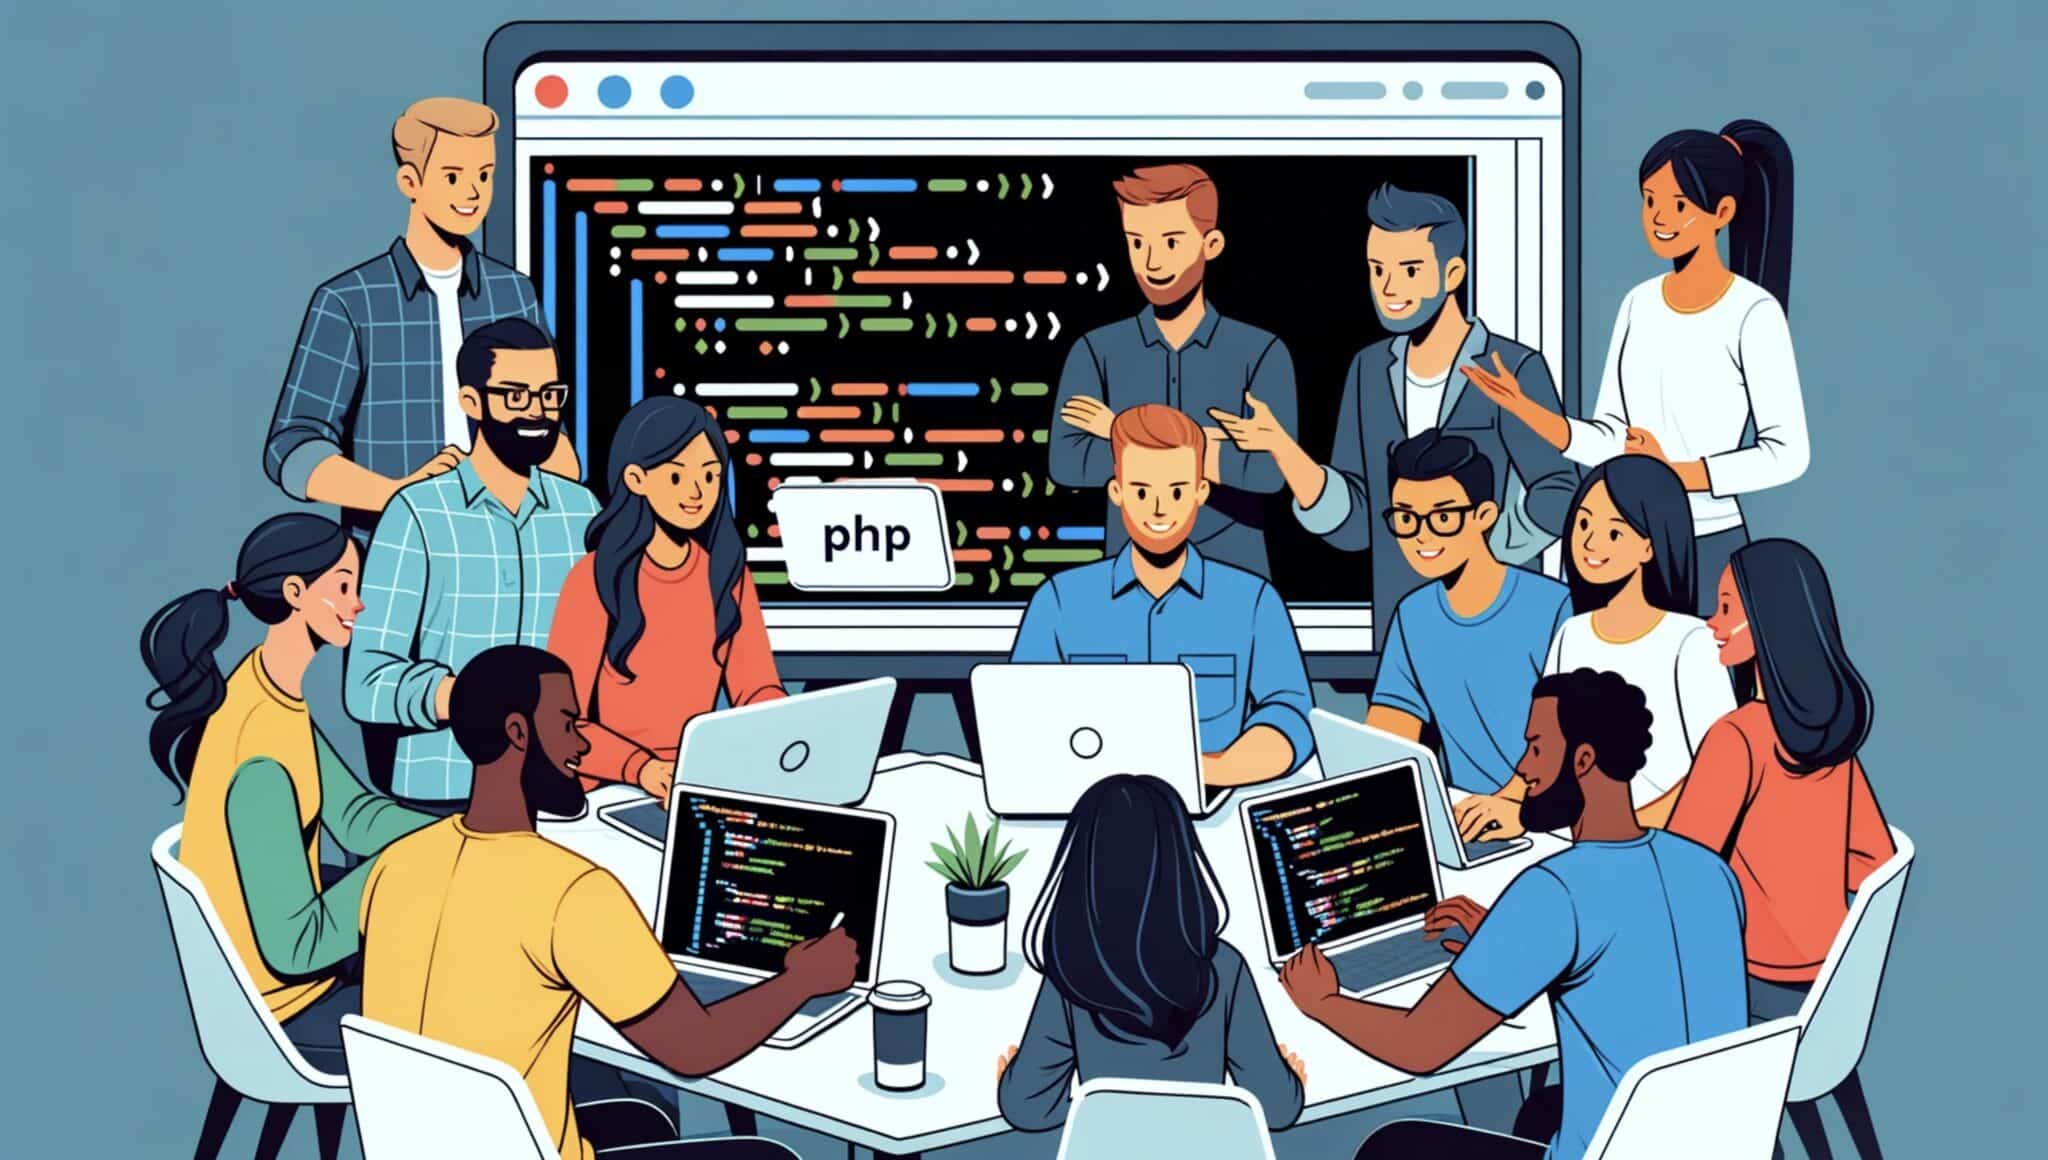 क्या PHP एक ख़राब ढंग से डिज़ाइन की गई प्रोग्रामिंग भाषा है? एक व्यापक विश्लेषण